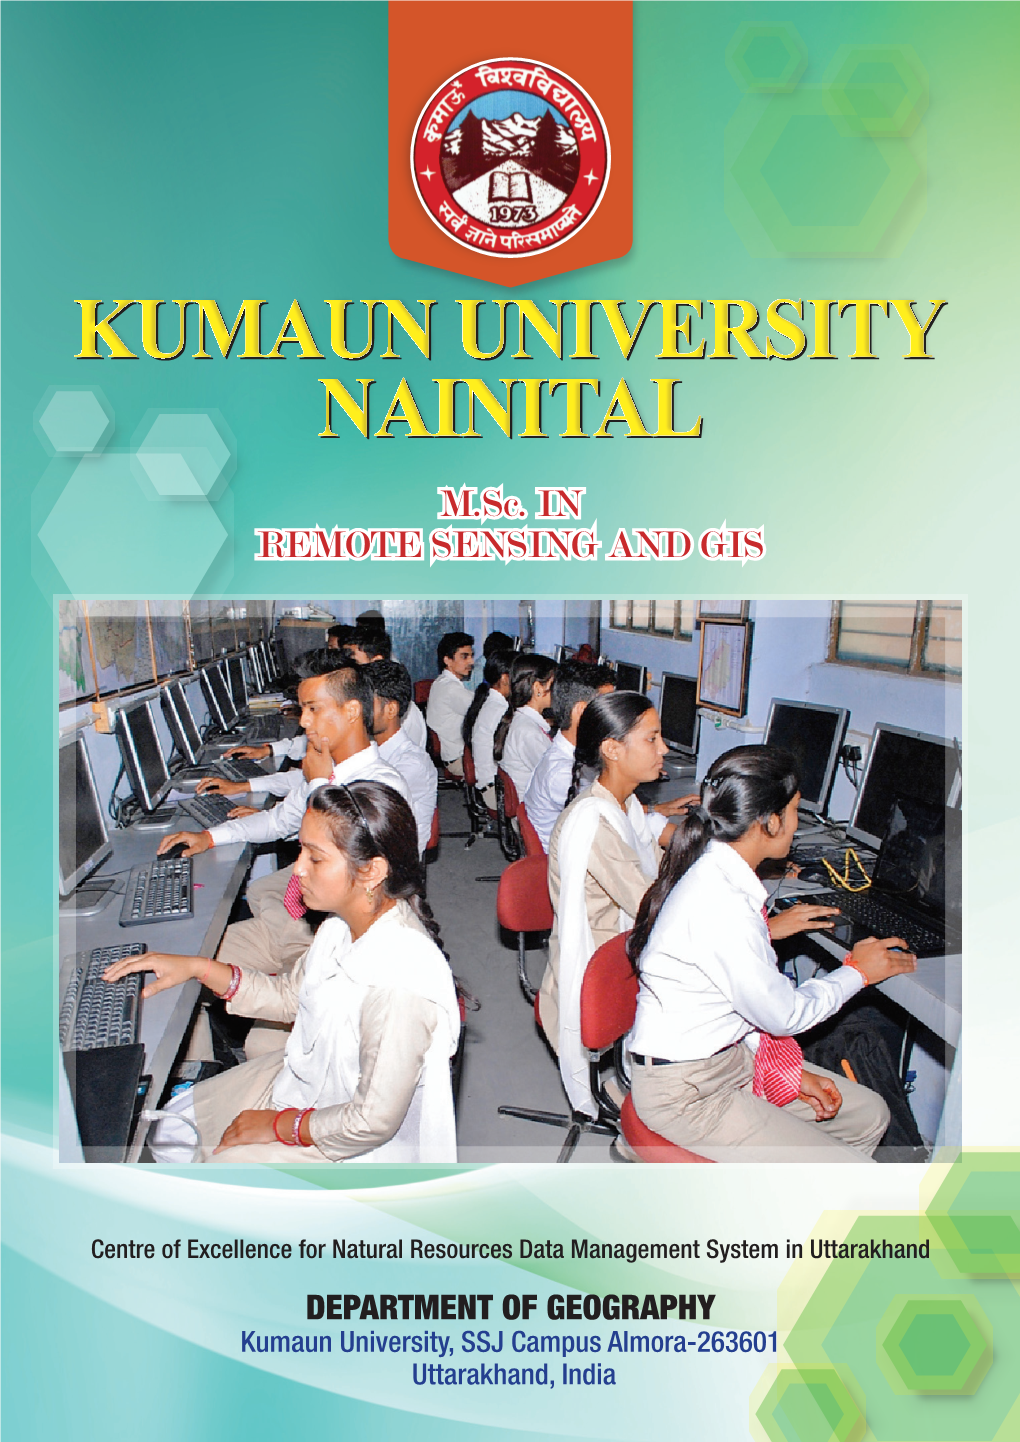 Kumaun University Nainital